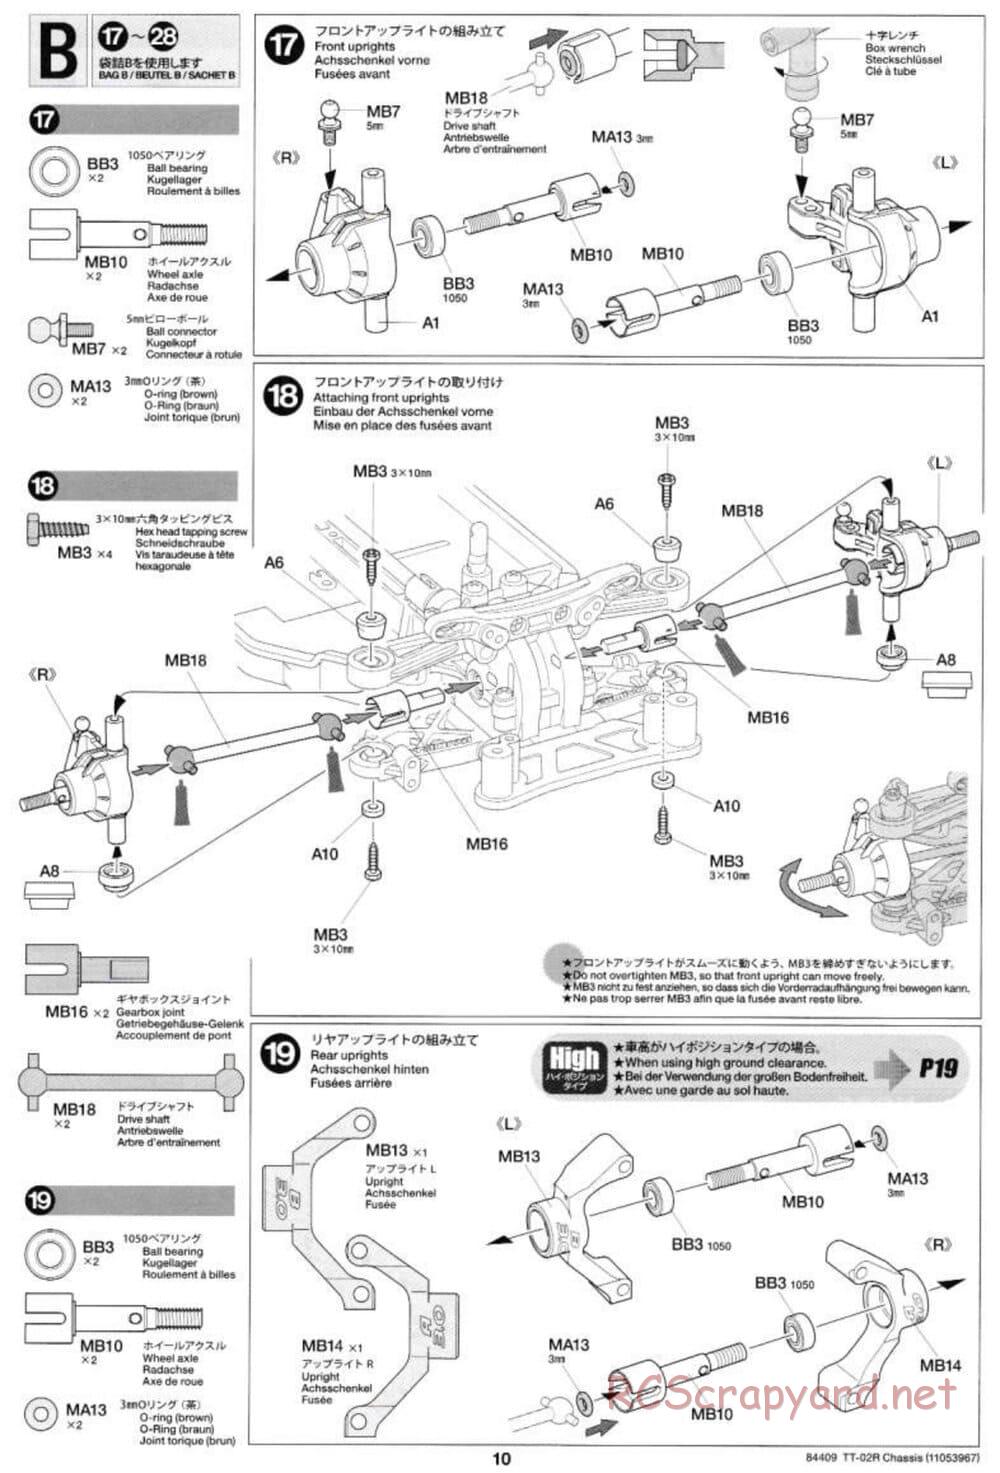 Tamiya - TT-02R Chassis - Manual - Page 10